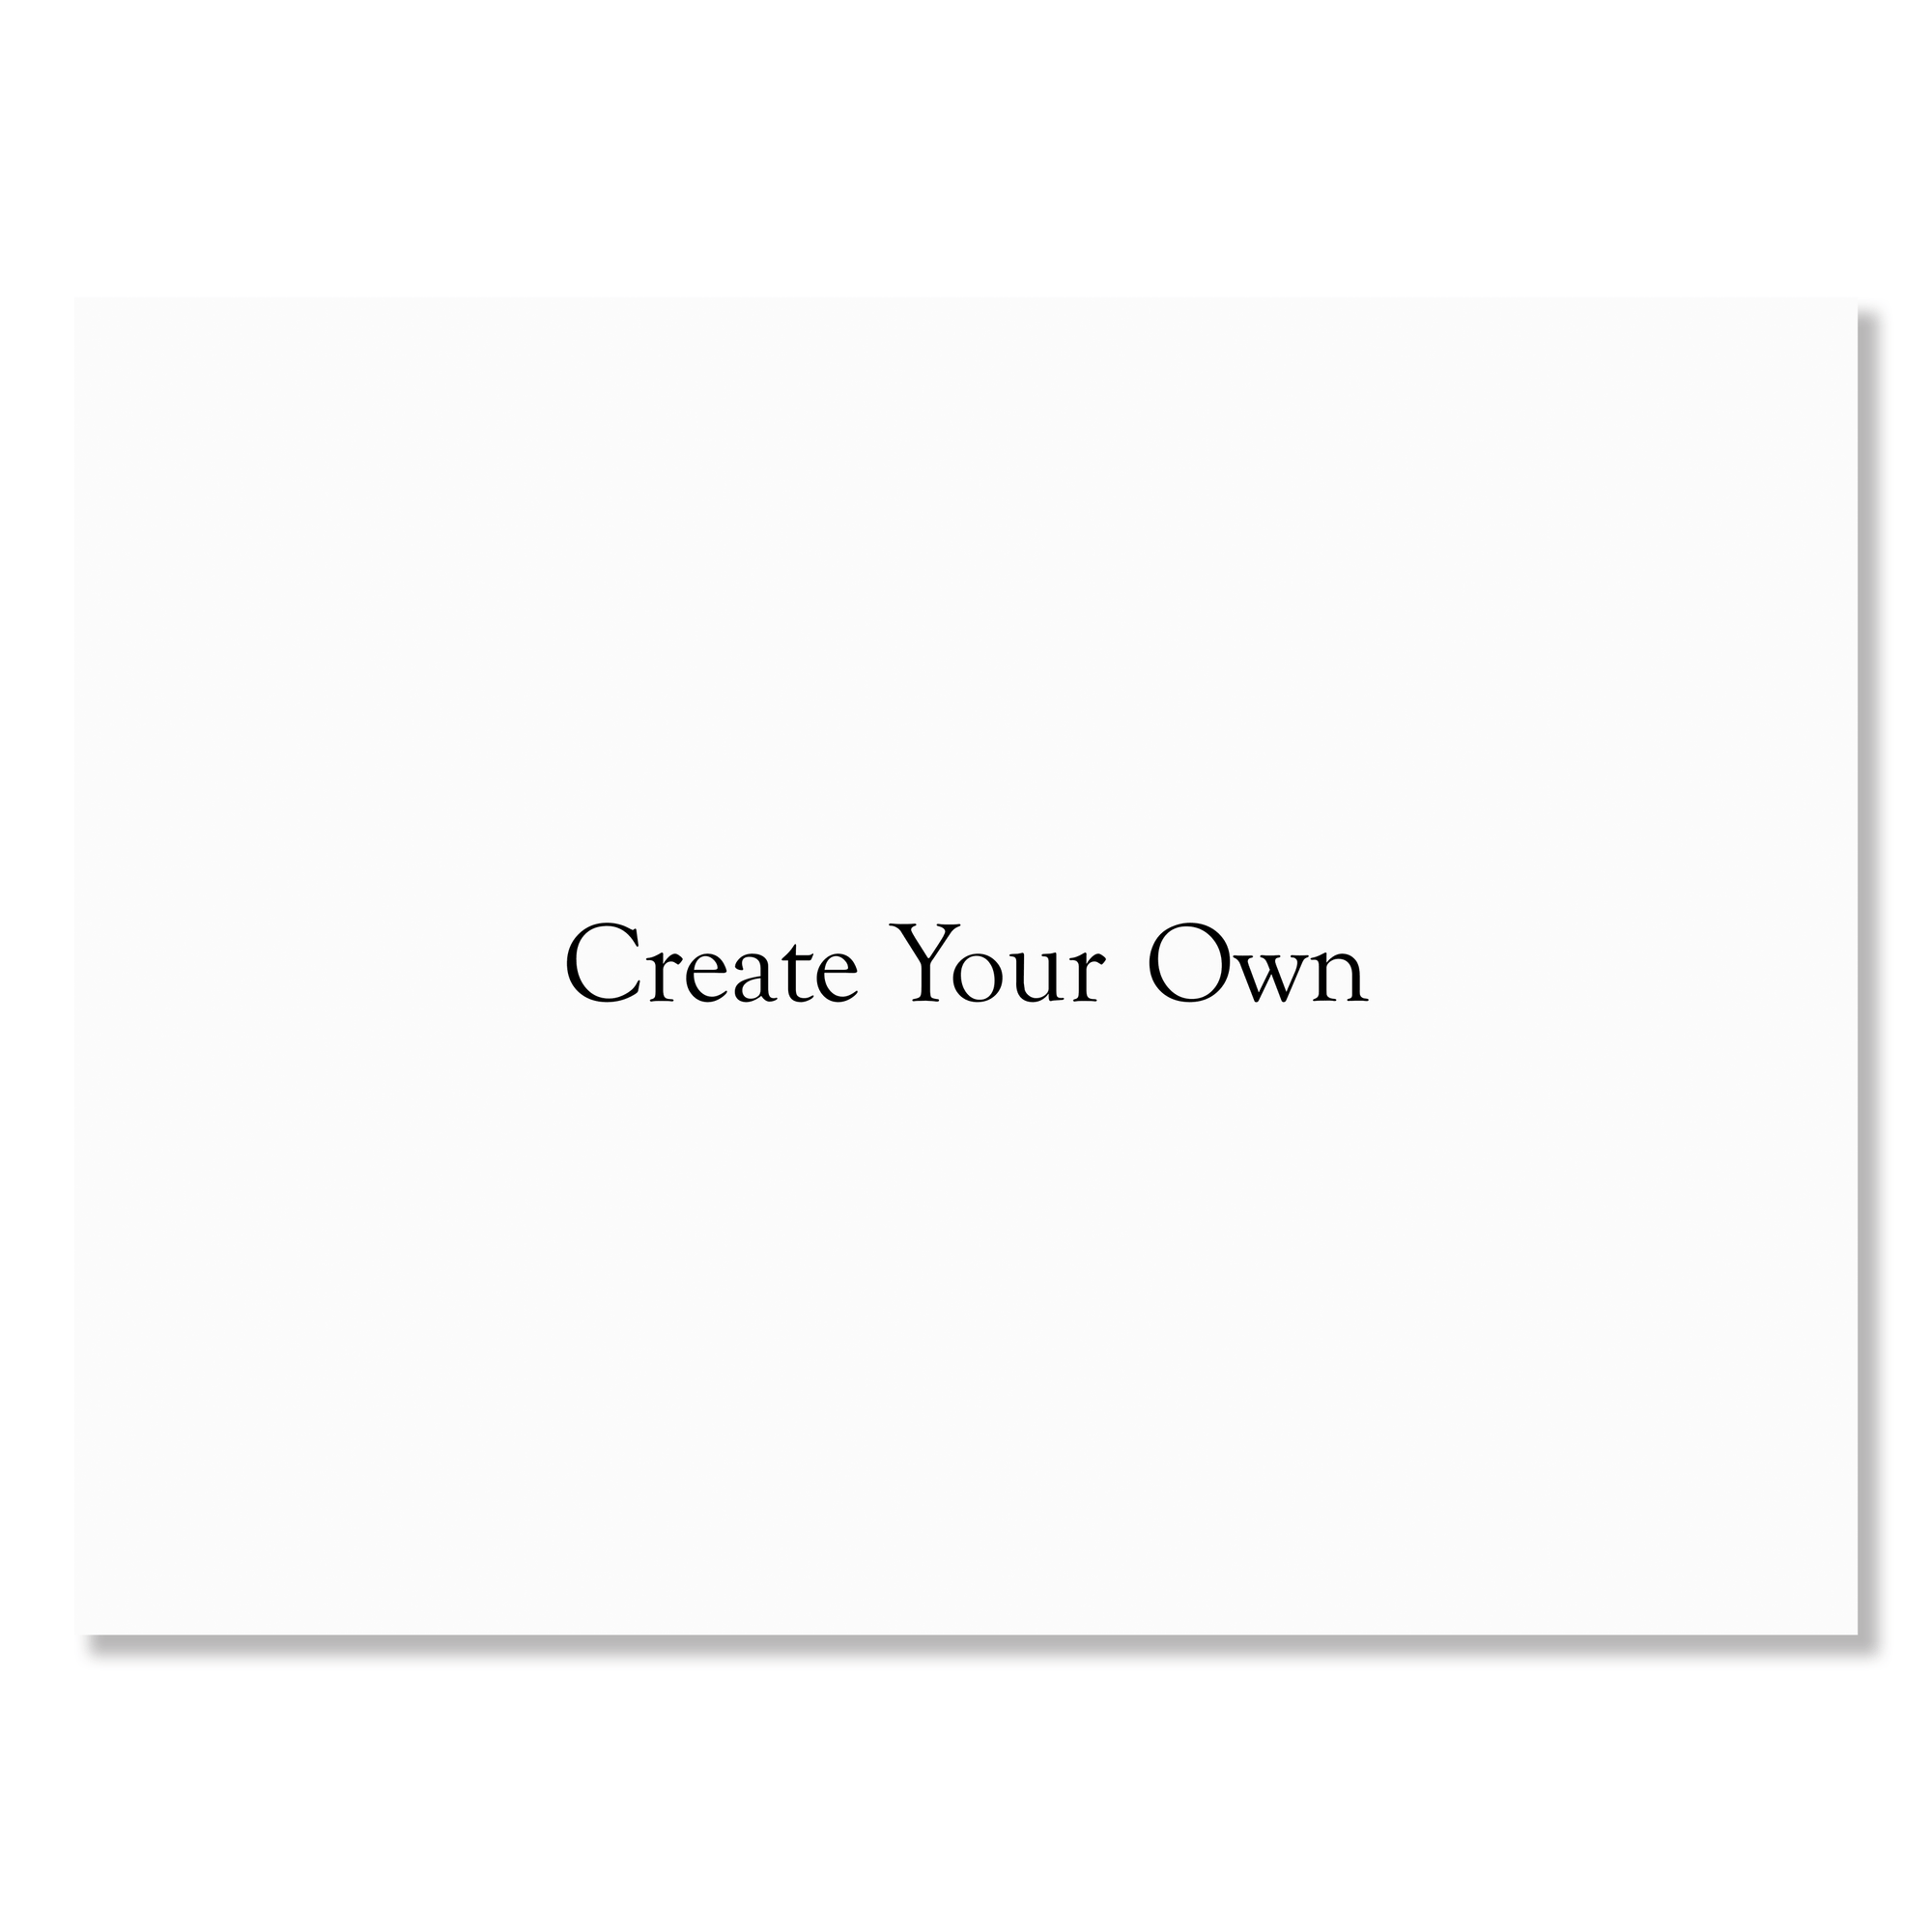 Create Your Own Custom Yard Sign - 24 x 18 Gartner Studios Sidewalk & Yard Signs 98180